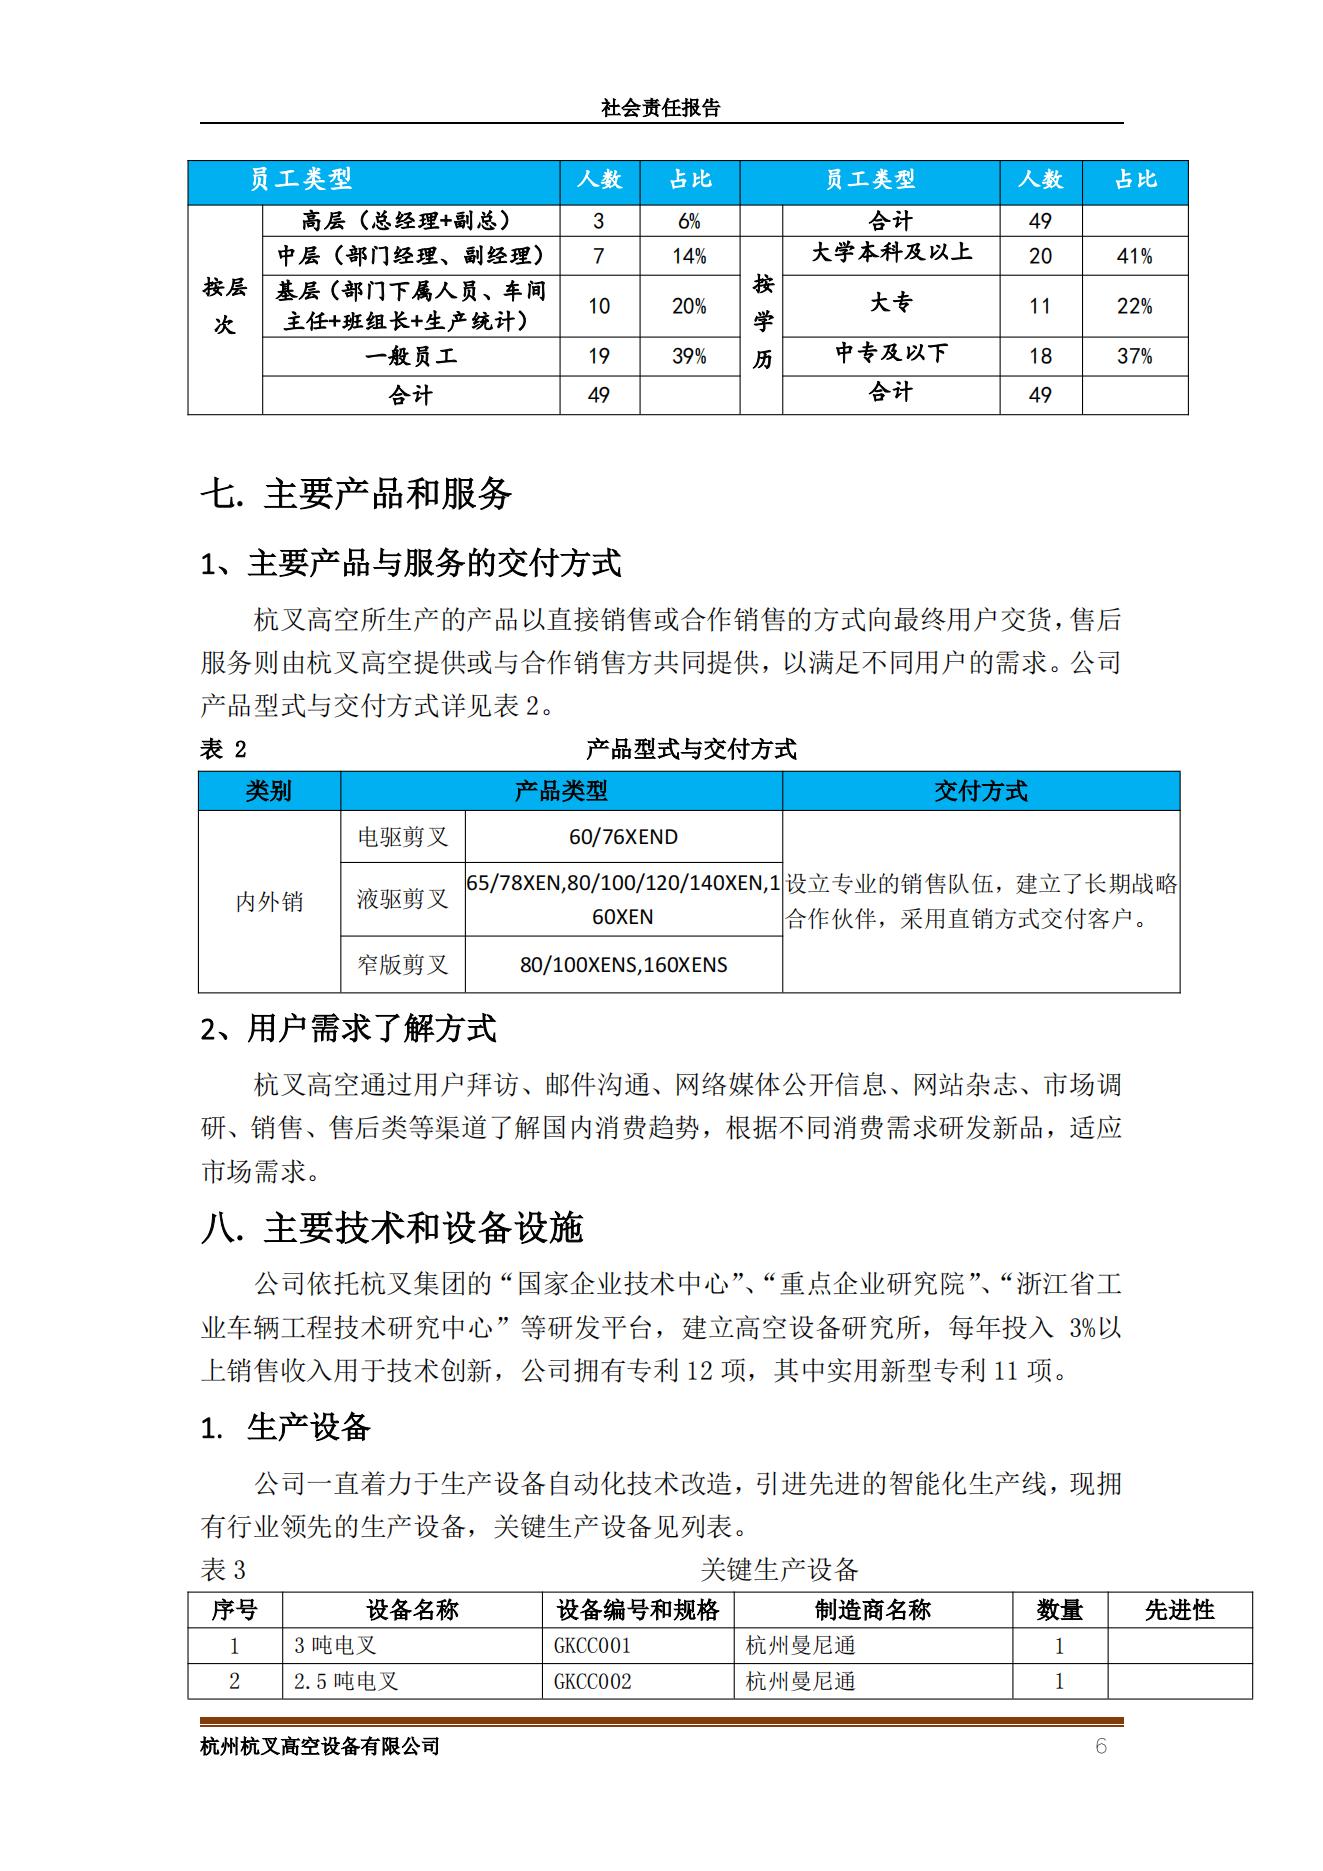 杭州杭叉高空設備2021年社會責任報告(圖6)